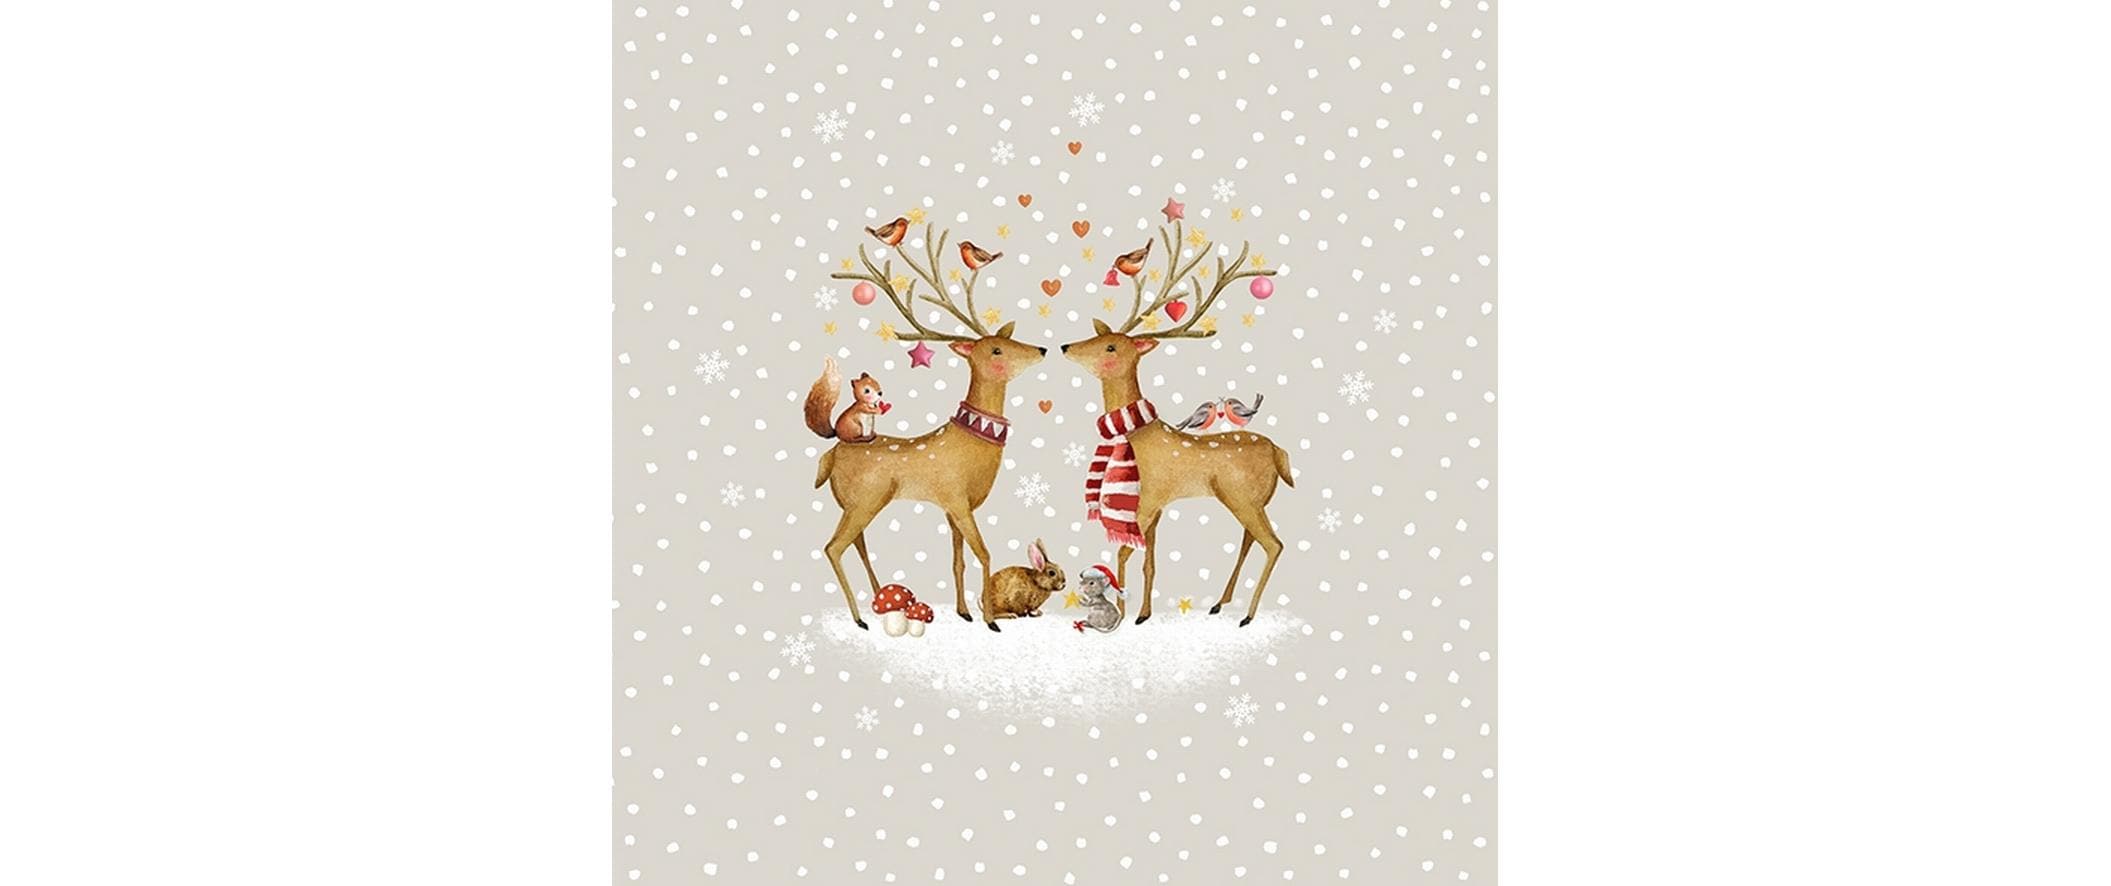 Braun + Company Weihnachtsservietten Romantic Deers 33 cm x 33 cm, 20 Stück